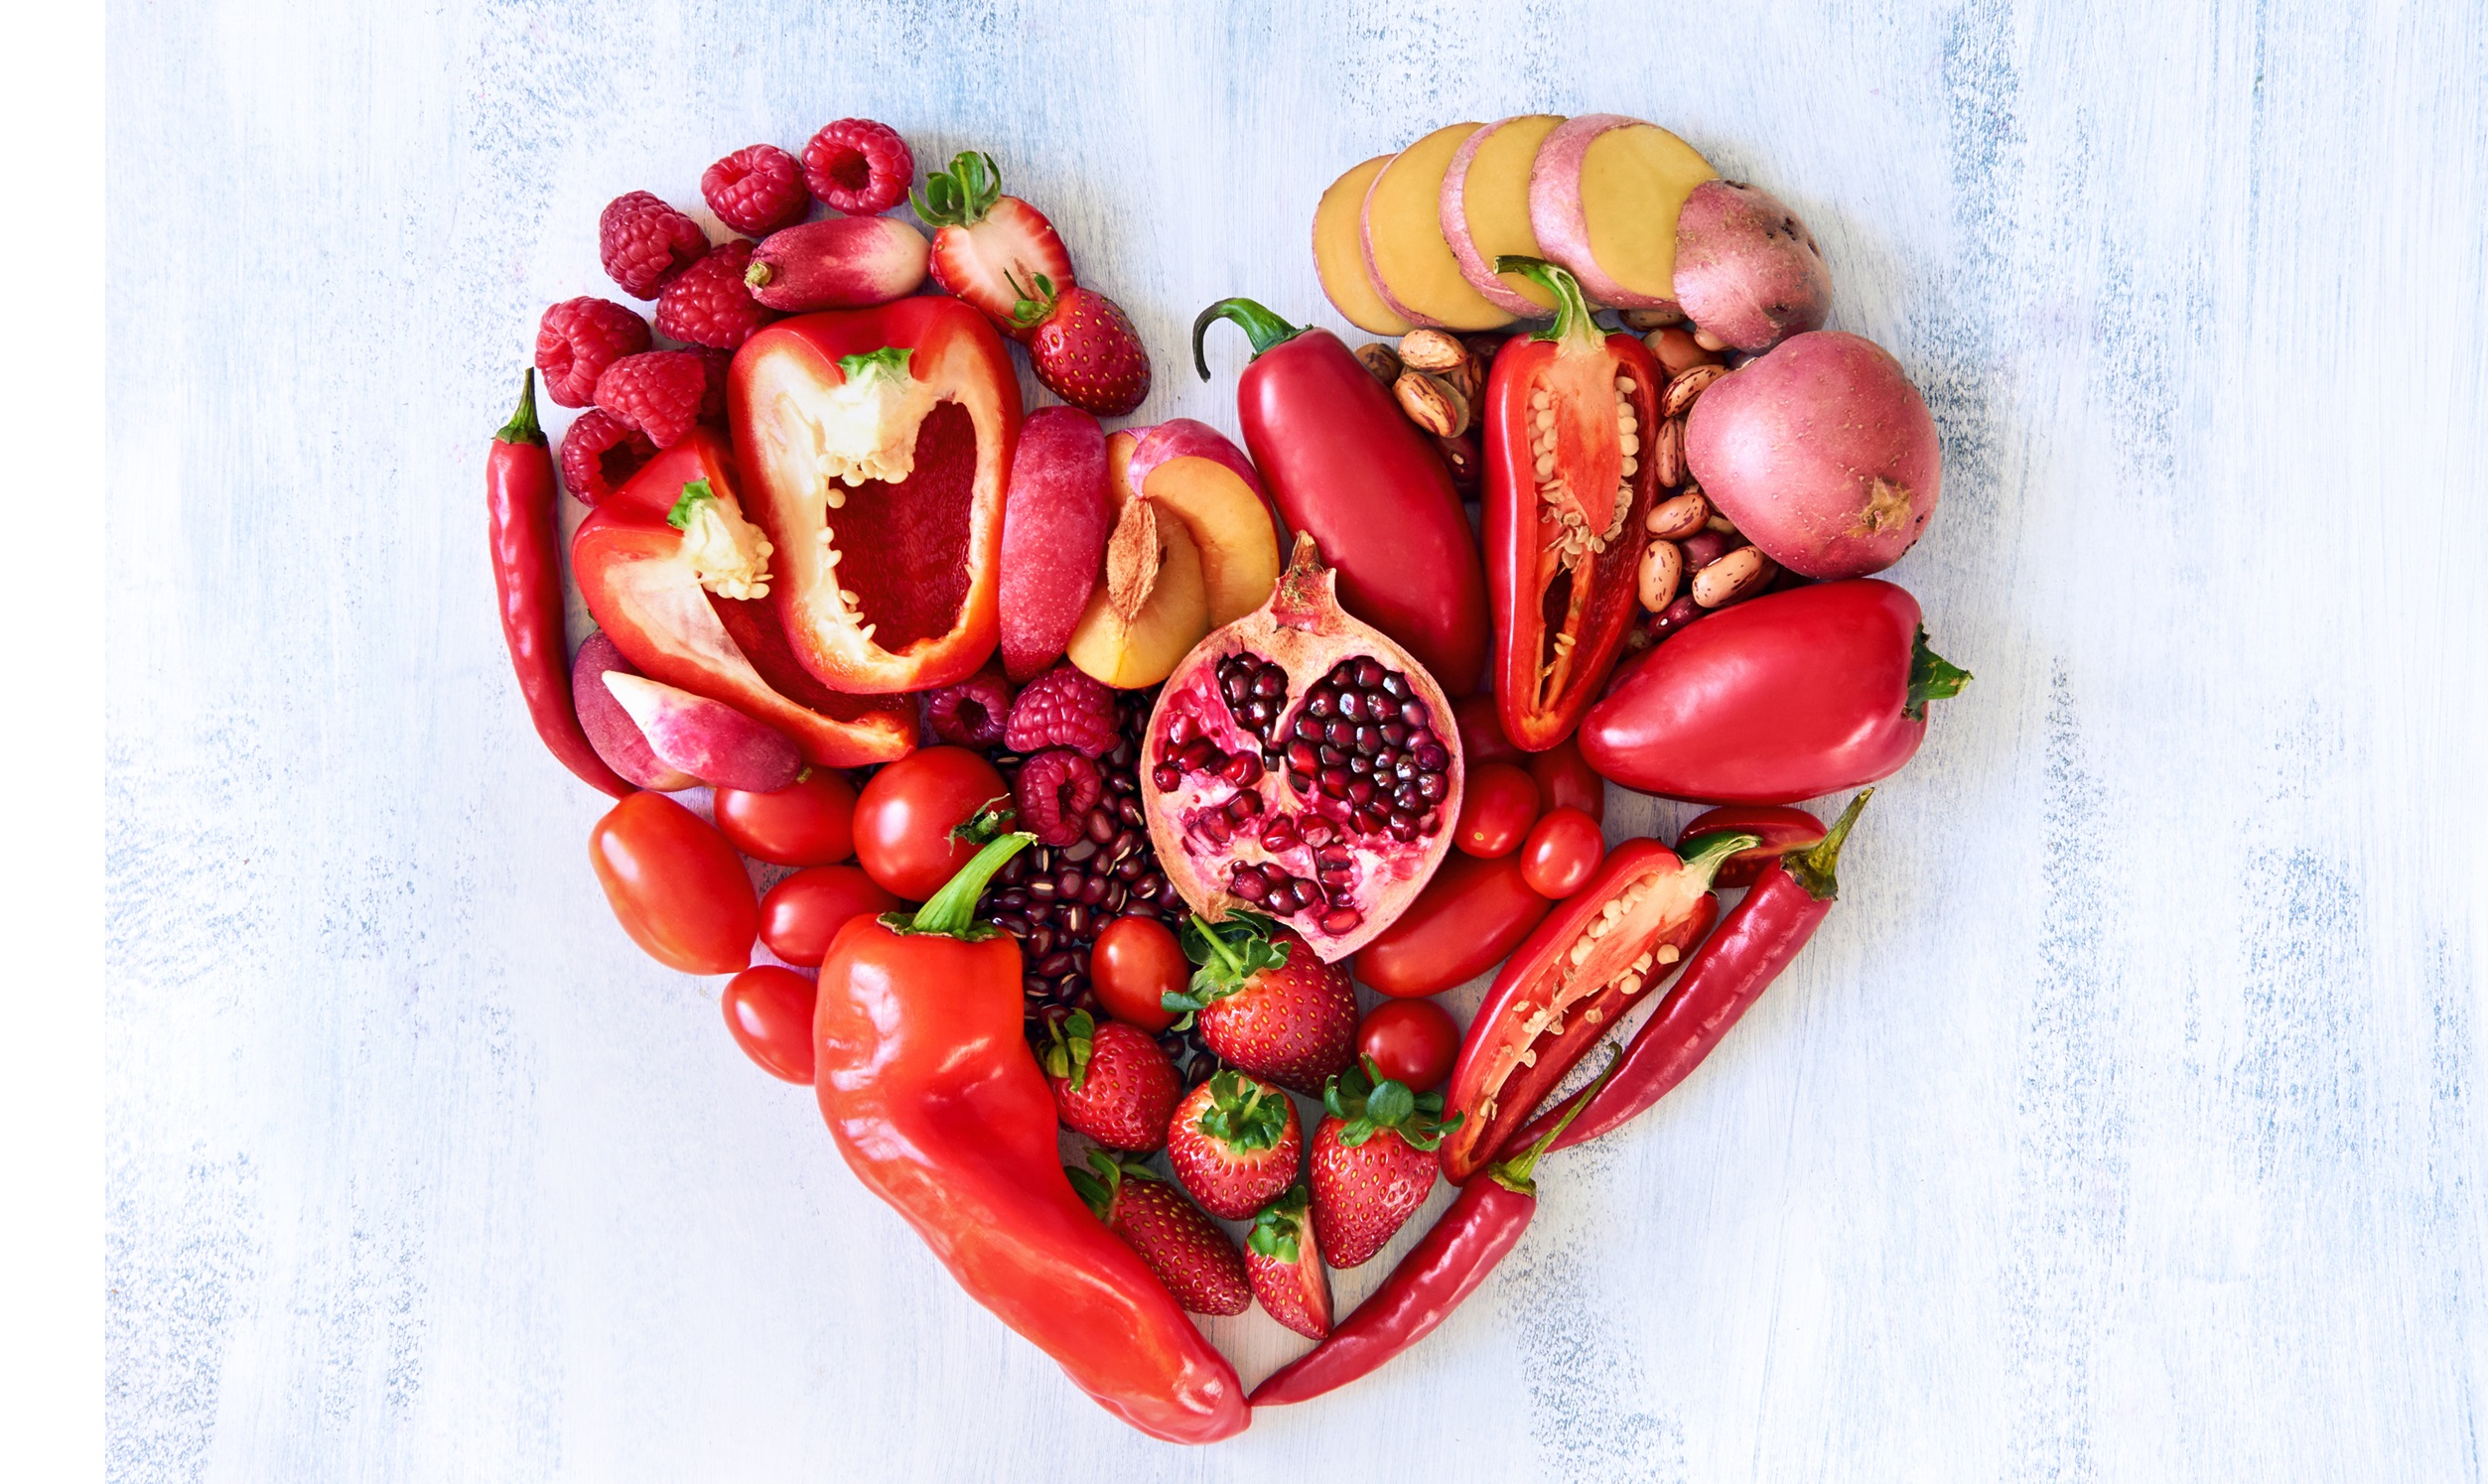 Thực phẩm màu đỏ giúp dưỡng tim, vì vậy nên sử dụng thực phẩm màu đỏ trong chế độ ăn mùa hè. (Ảnh: Shutterstock)